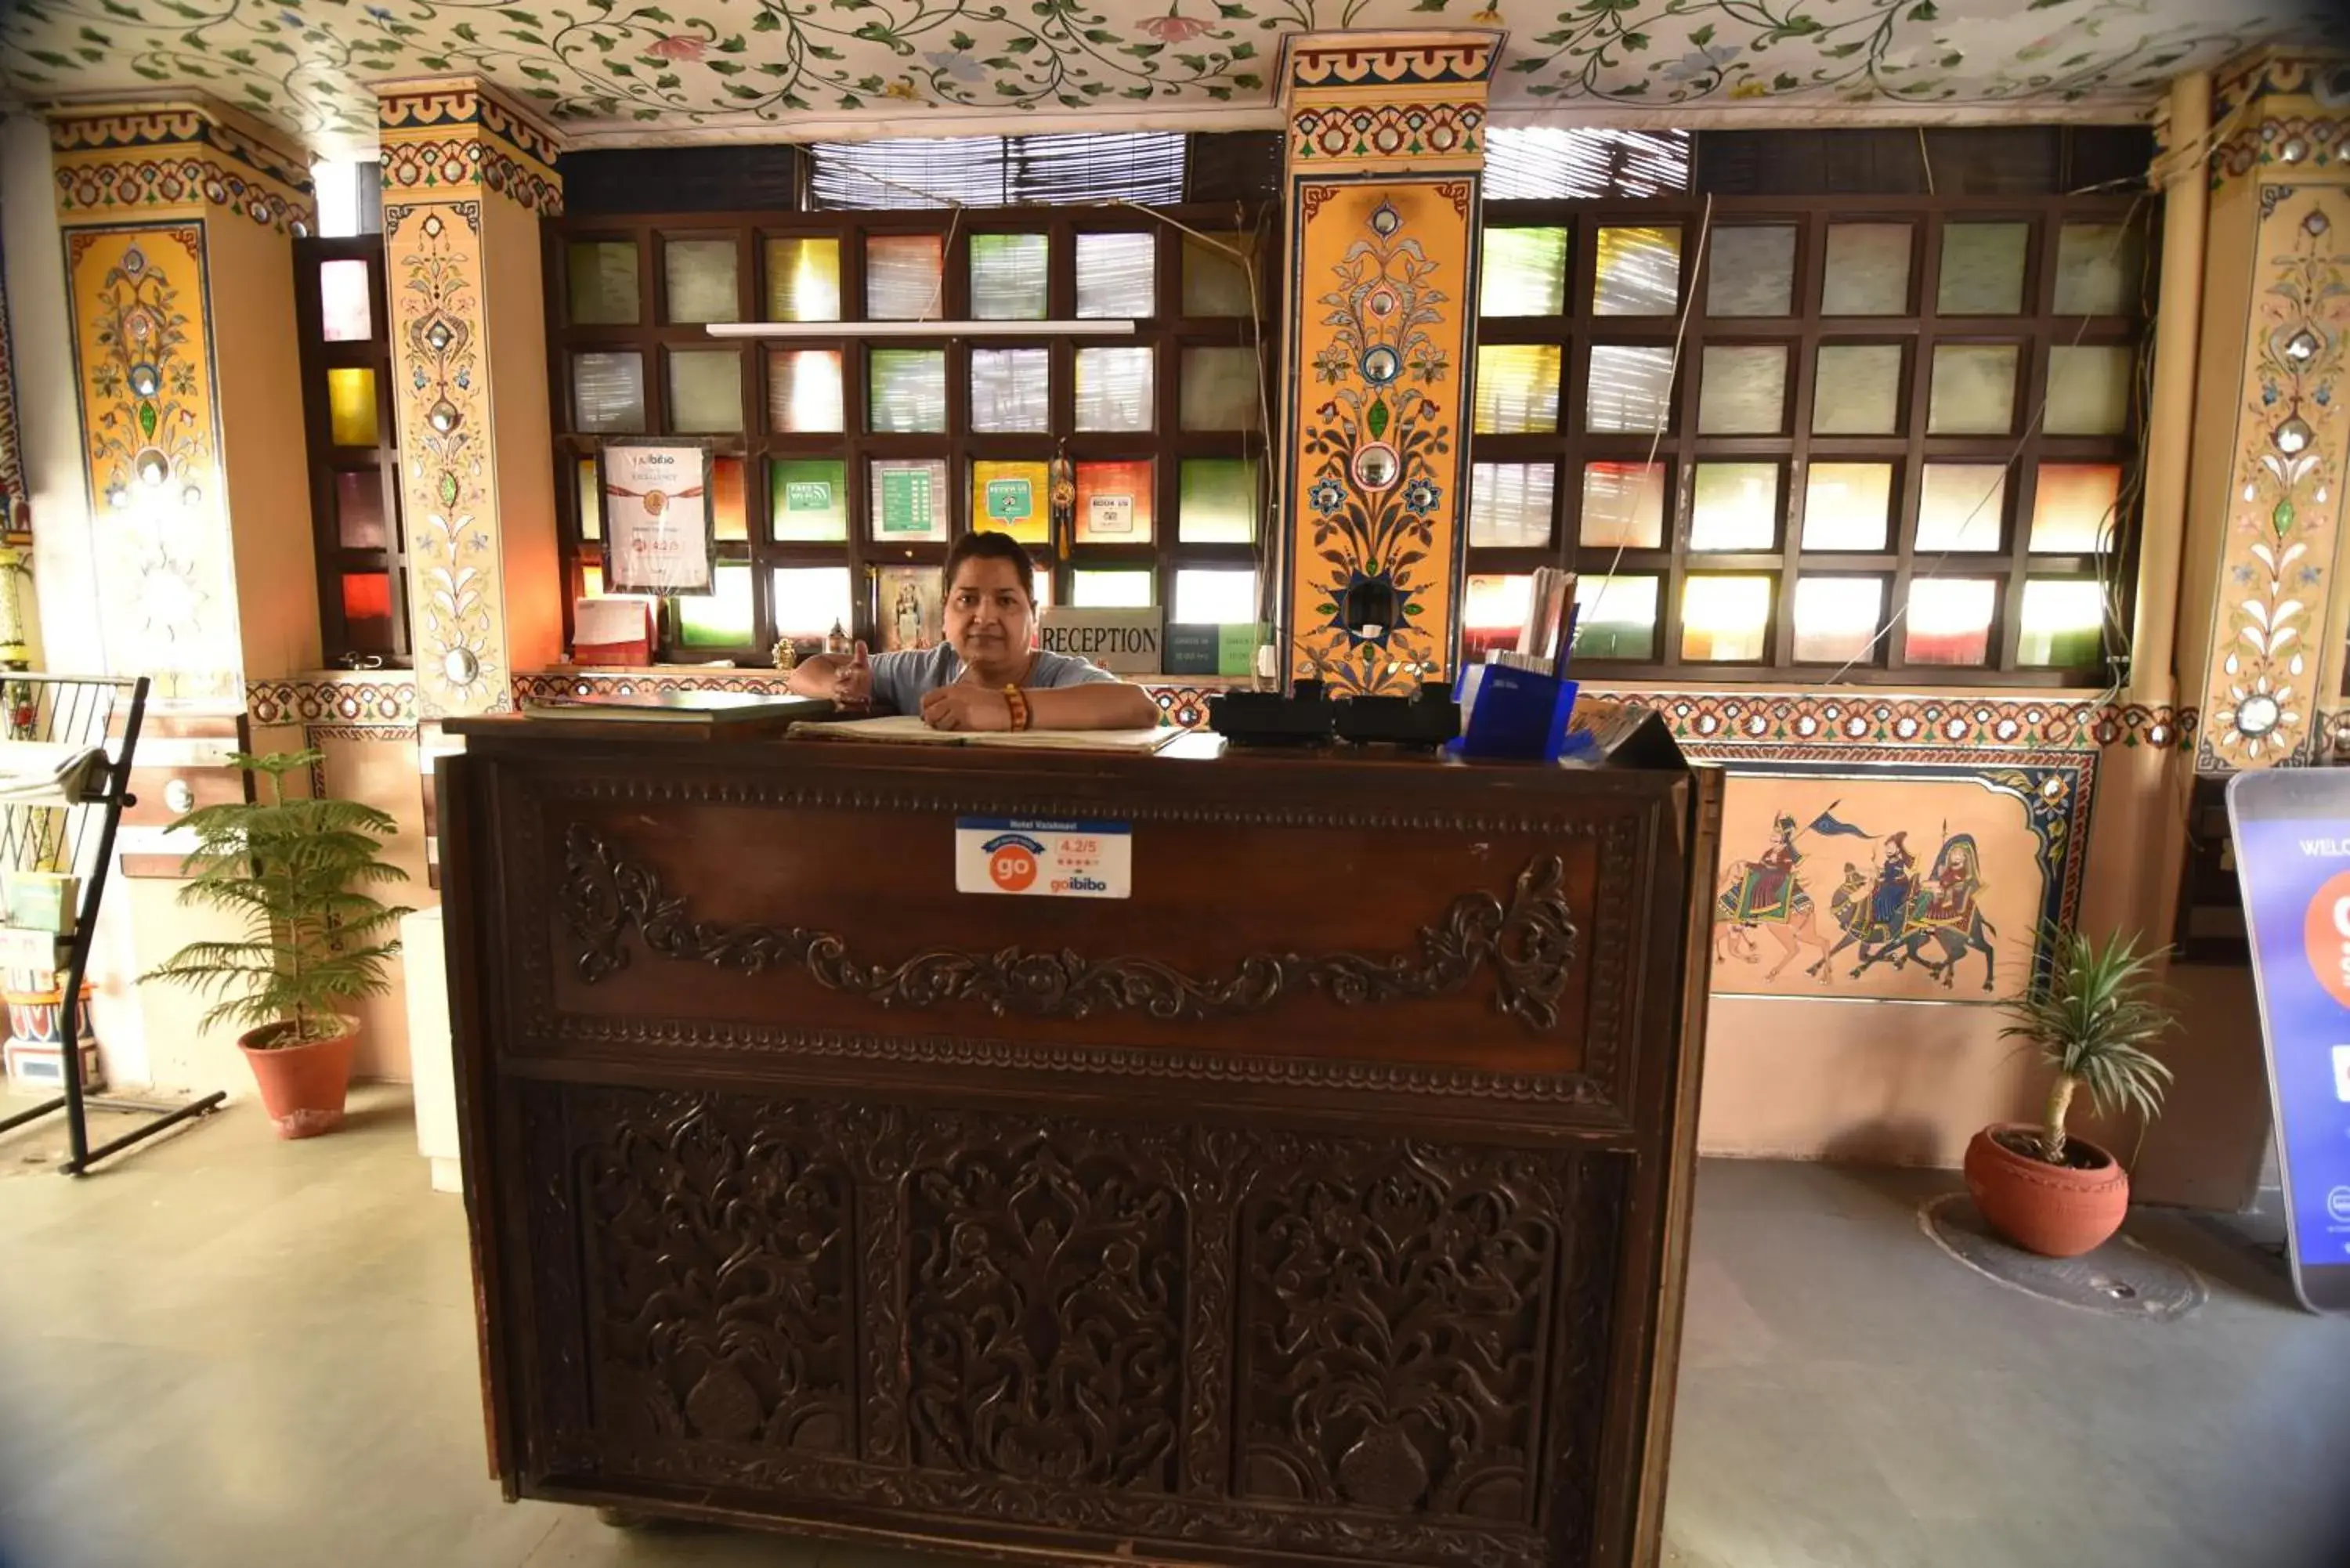 Lobby or reception, Lobby/Reception in Hotel Vaishnavi